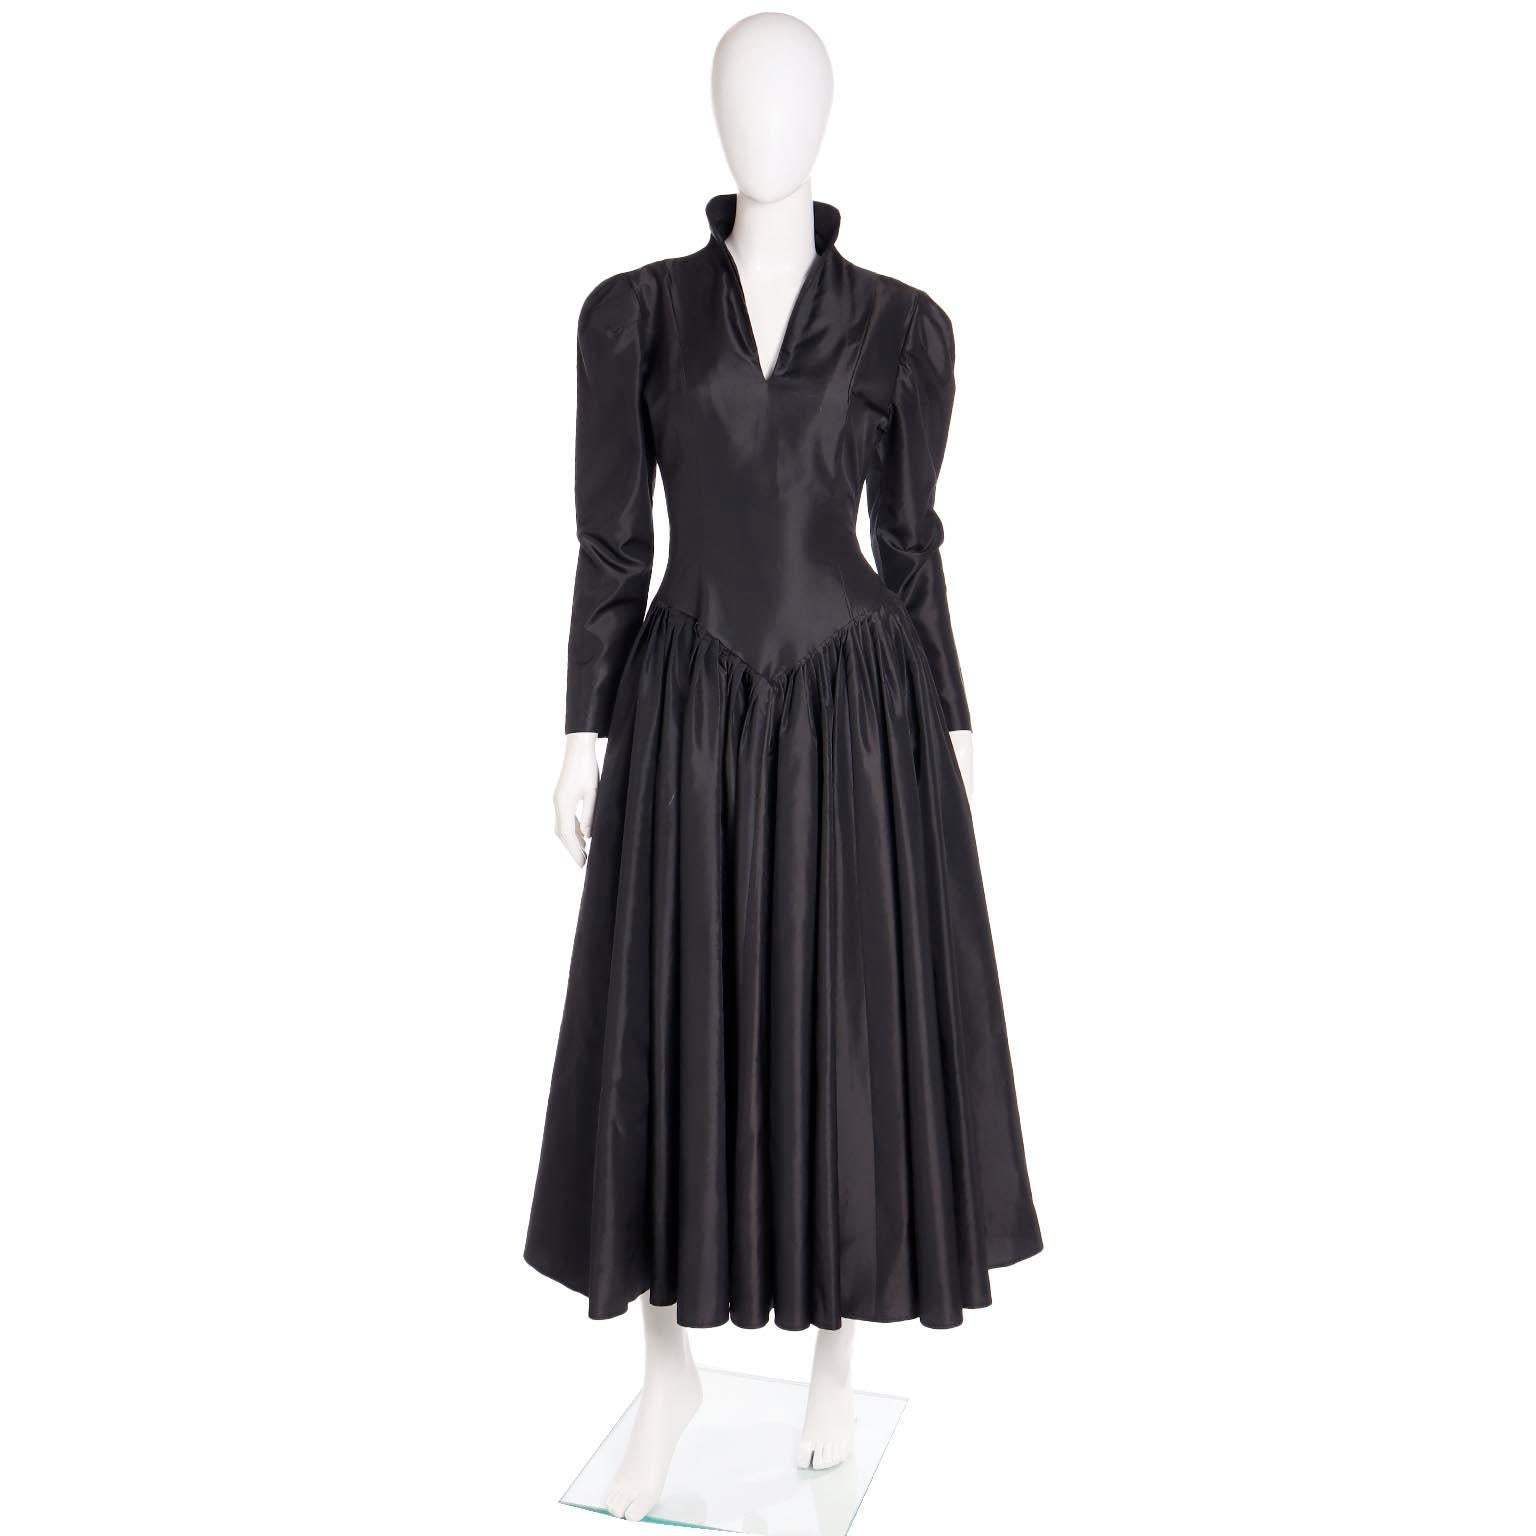 Voici une superbe robe vintage Norma Kamali des années 1980, en taffetas de satin noir. Norma Kamali s'est souvent inspirée de l'époque victorienne pour ses vêtements et elle a réussi à le faire avec une touche unique. De nombreux créateurs tentent